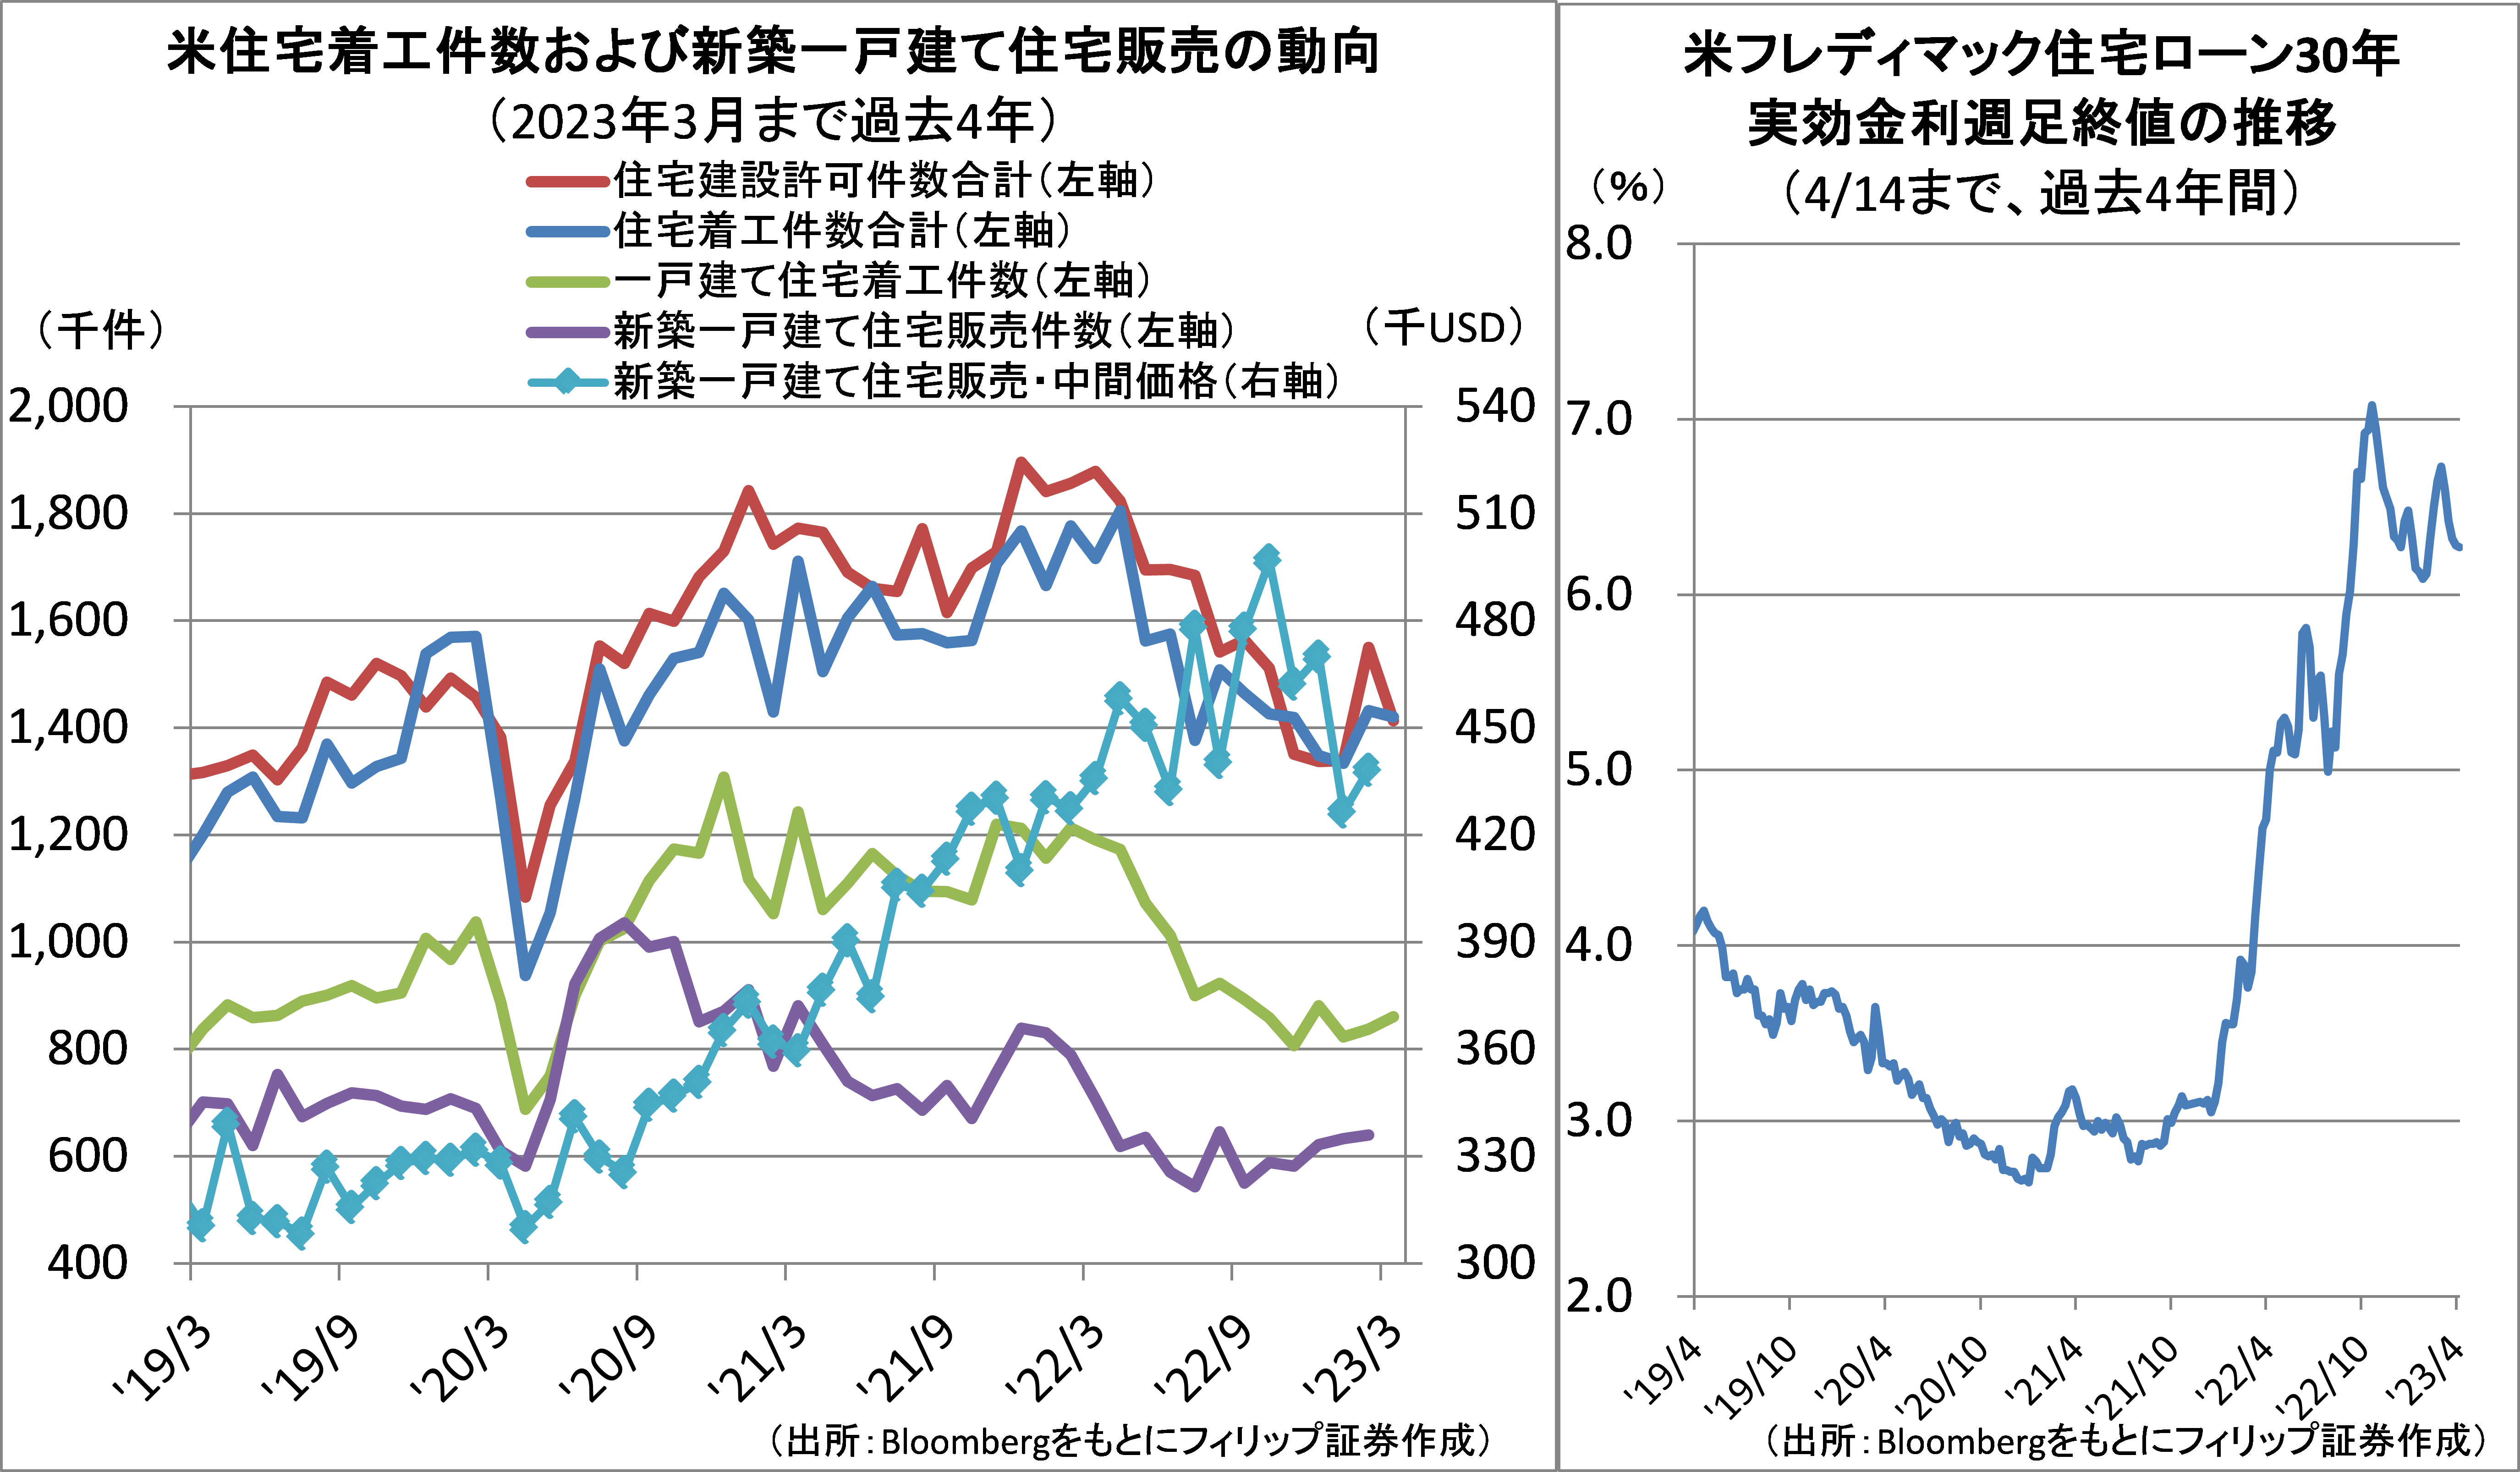 投資戦略ウィークリー 2023年4月24日号（2023年4月21日作成）】” 日本株の相次ぐ好材料は、懸念材料を吸収するか？”